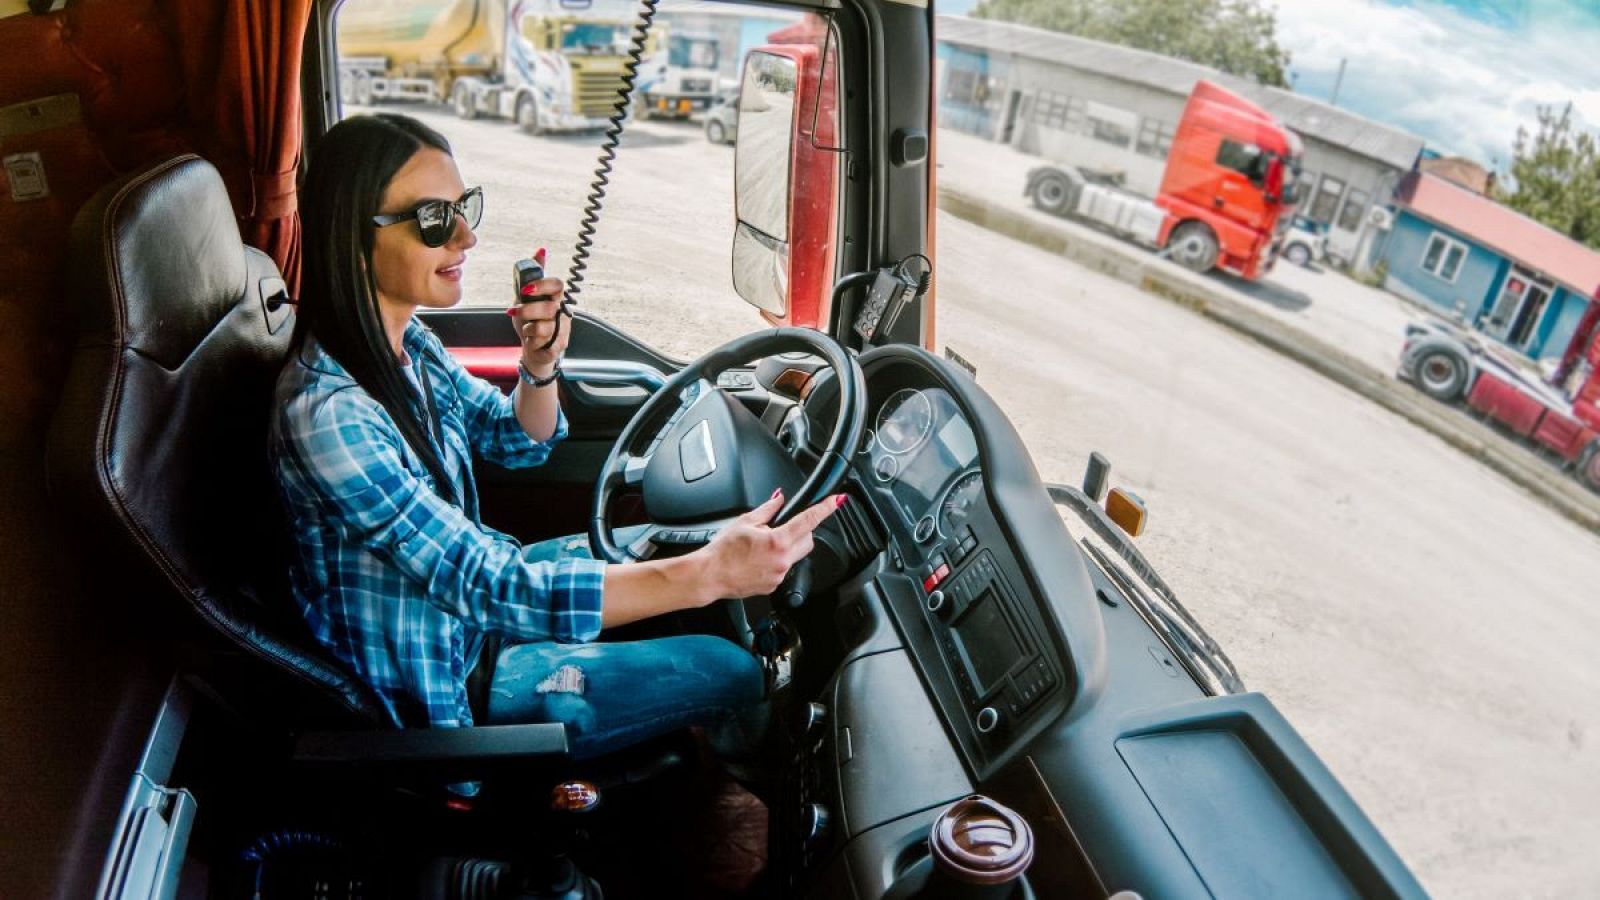 España 15.000 camioneros: "Ya hay mujeres que se quitan el miedo pese a los prejuicios"